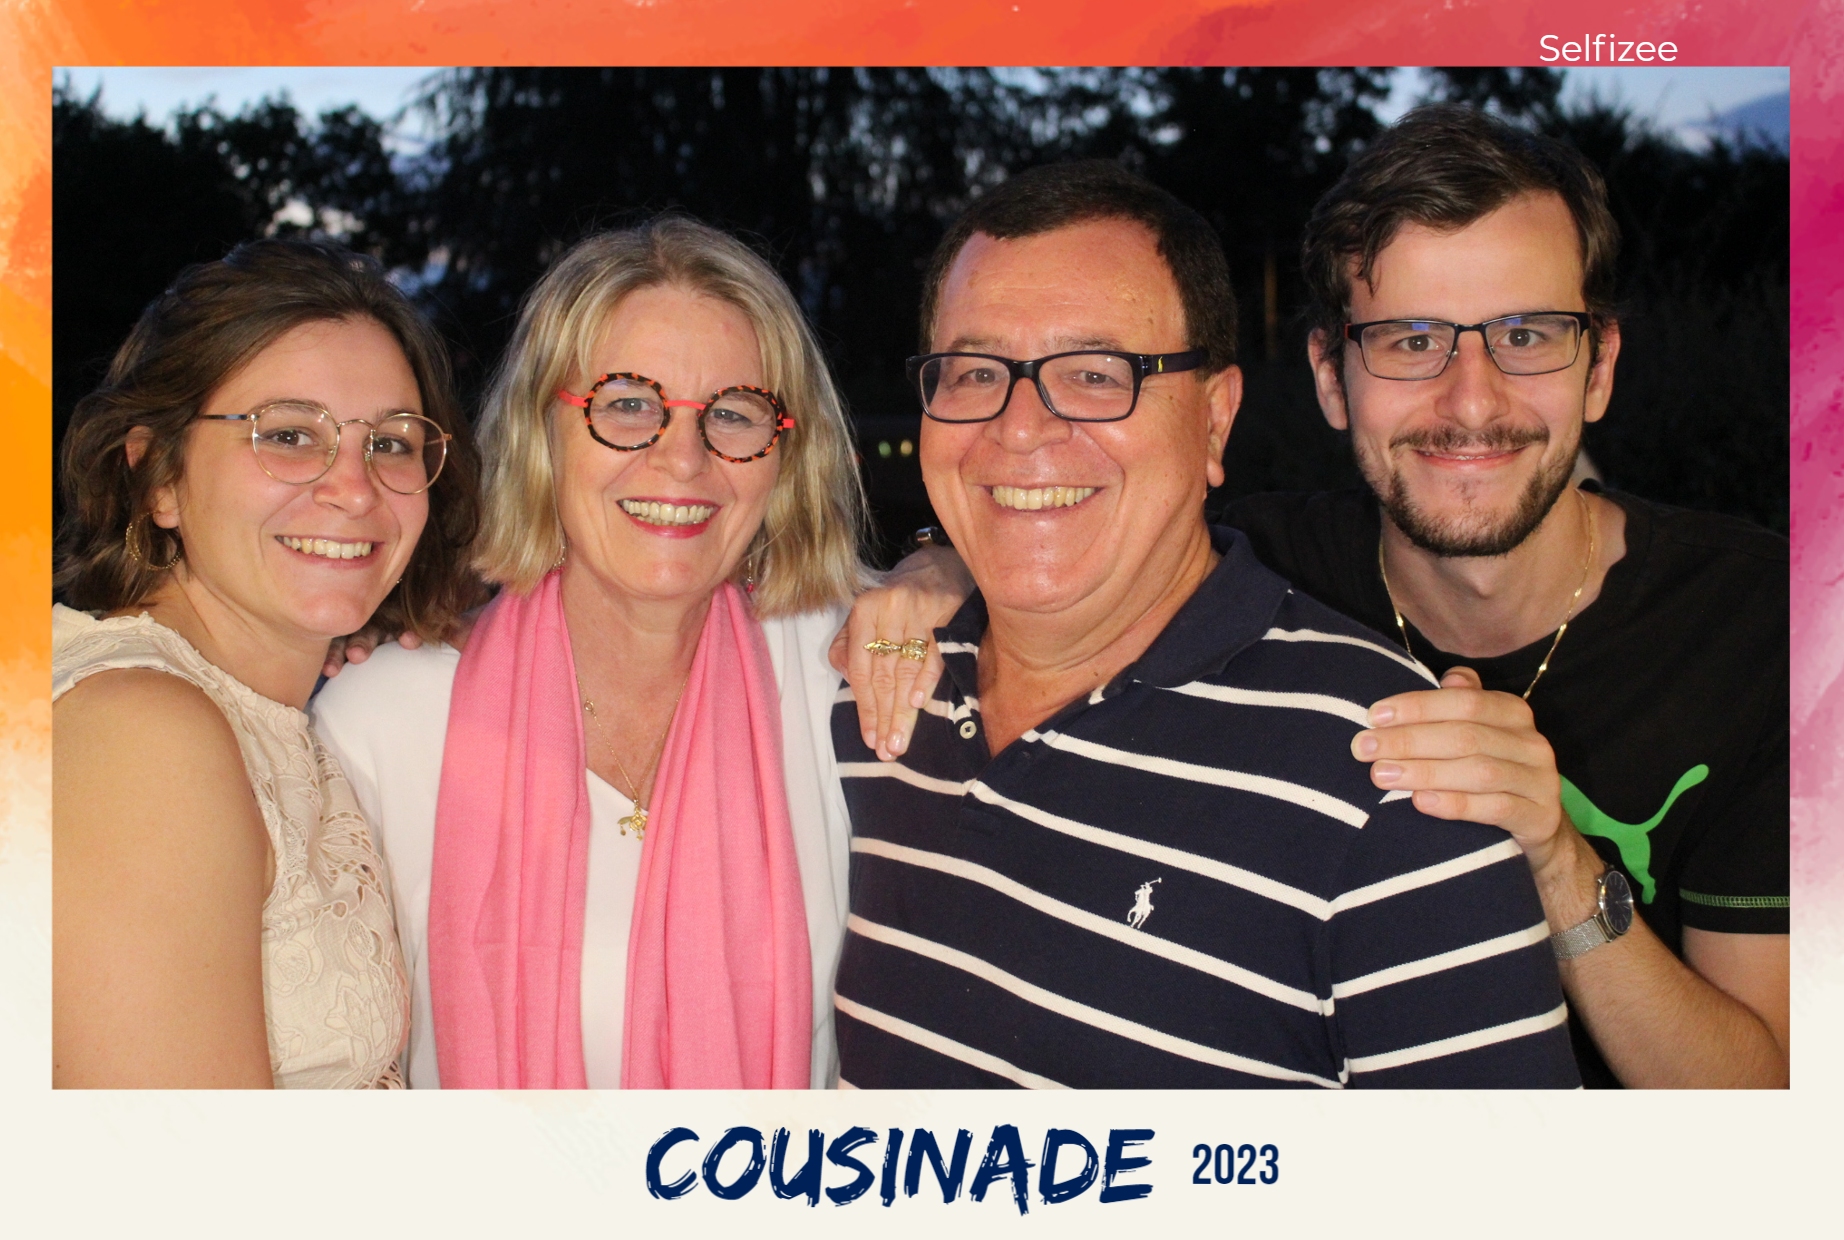 Cousinade 2023 Angers devant la borne à selfie